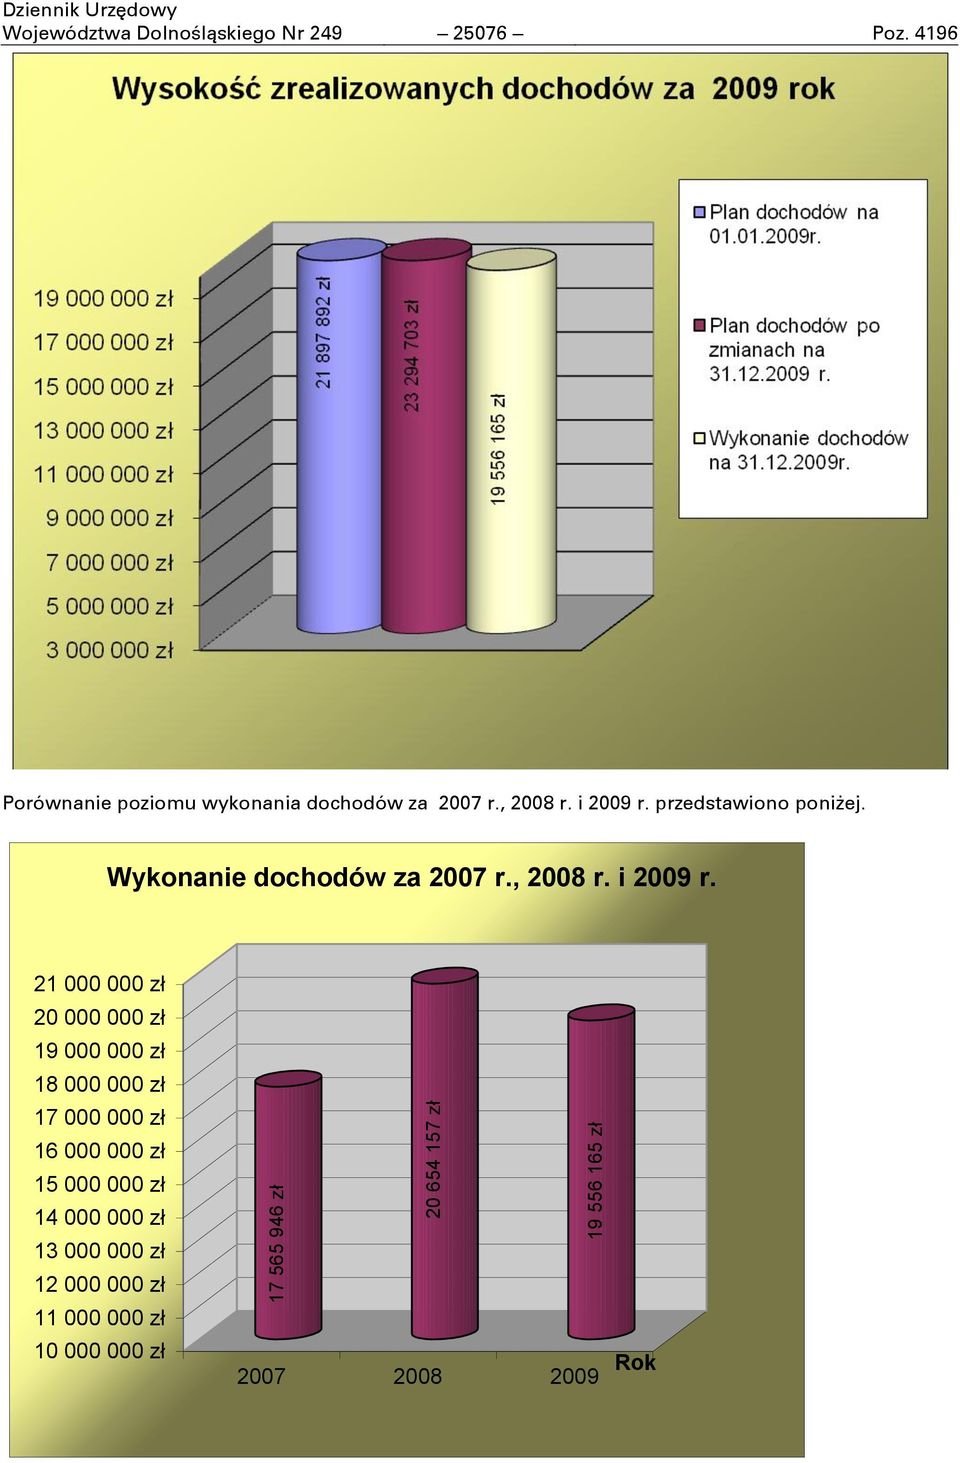 Wykonanie dochodów za 2007 r., 2008 r. i 2009 r.